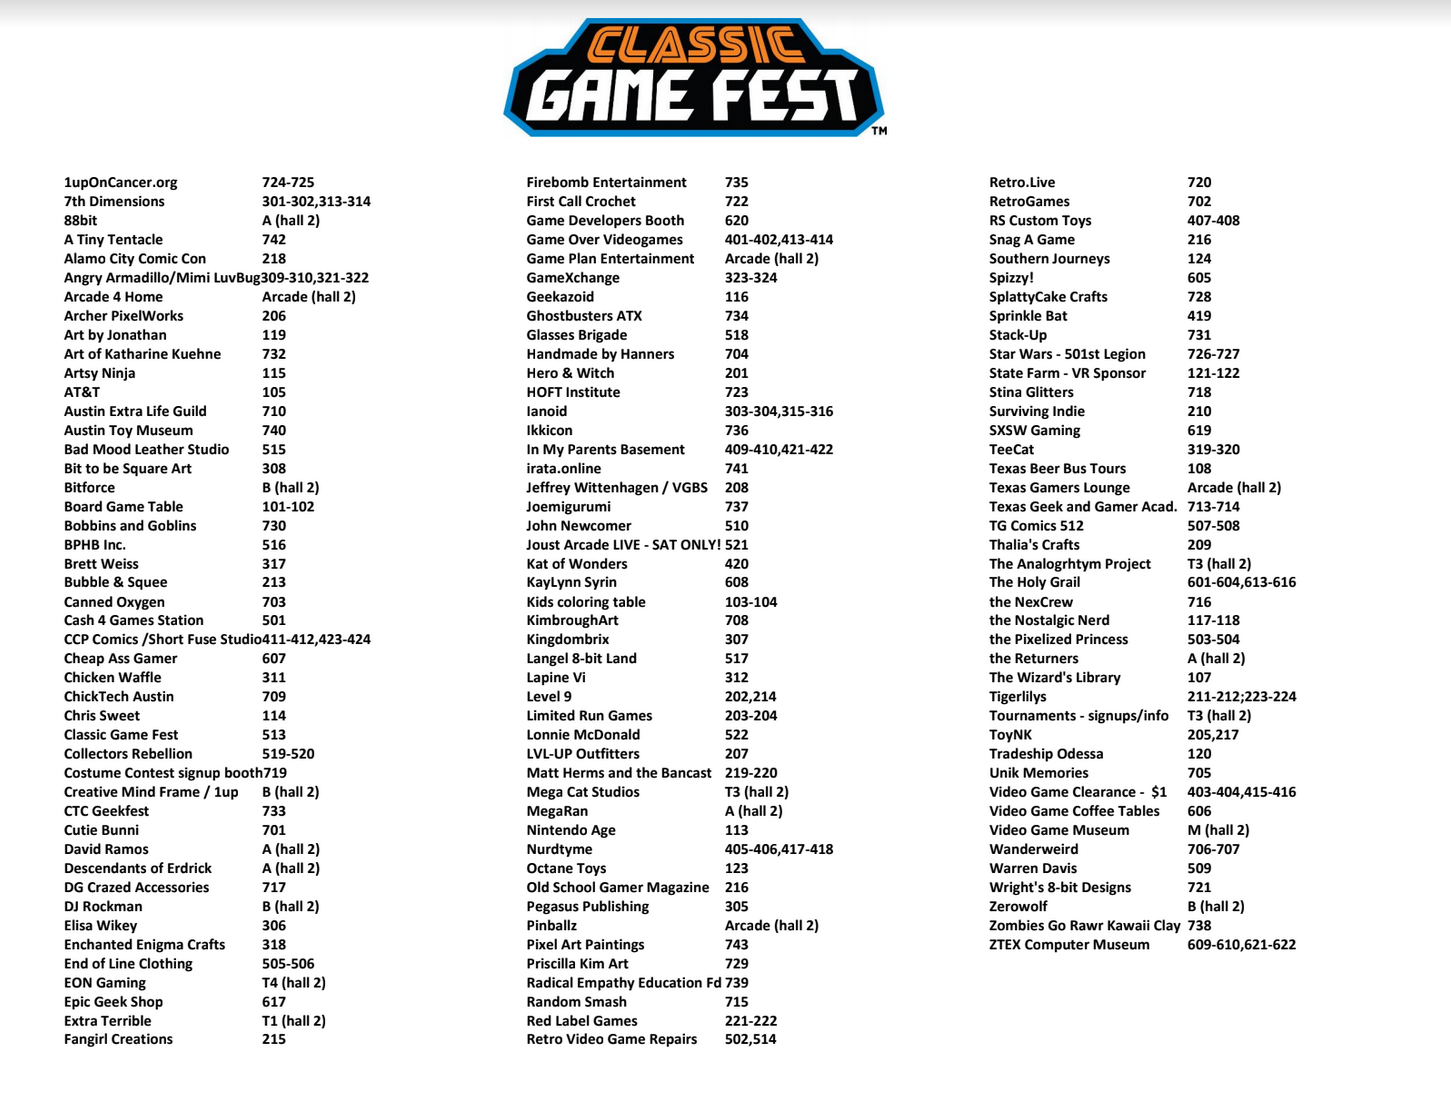 Classic Game Fest Floor Plan/Vendor List - Classic Game Fest